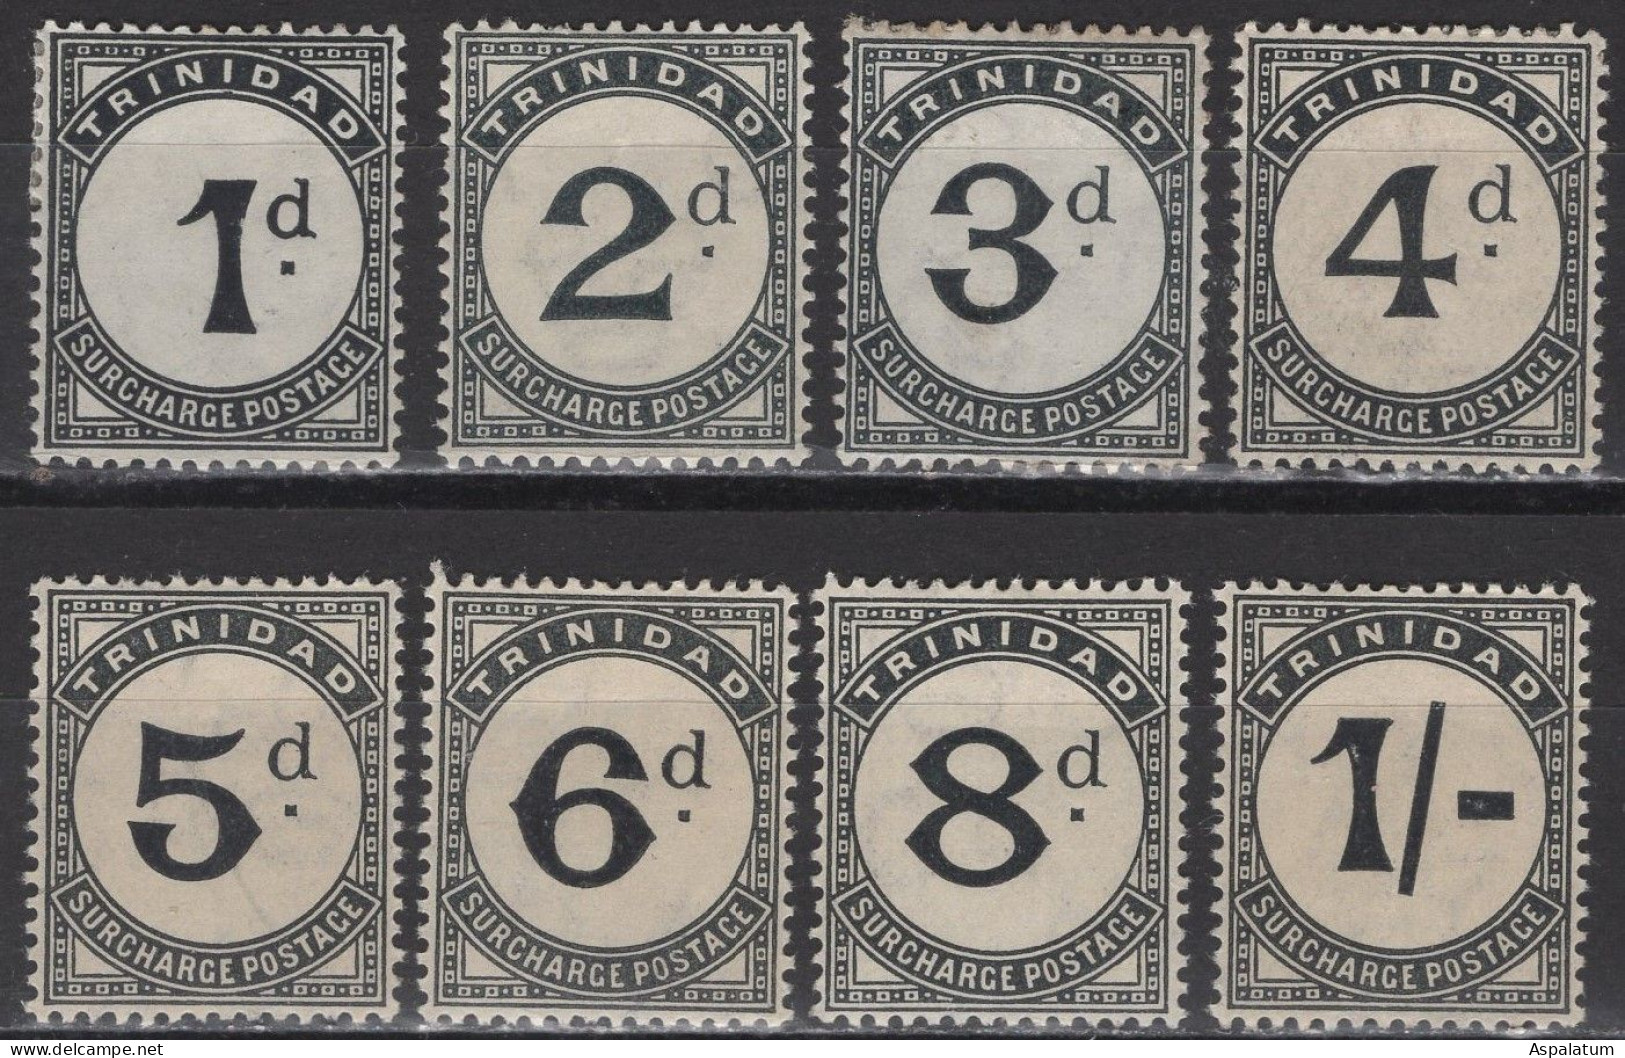 Trinidad - Postage Due - Set Of 8 - Mi 10~17 - 1906 - Trinité & Tobago (...-1961)